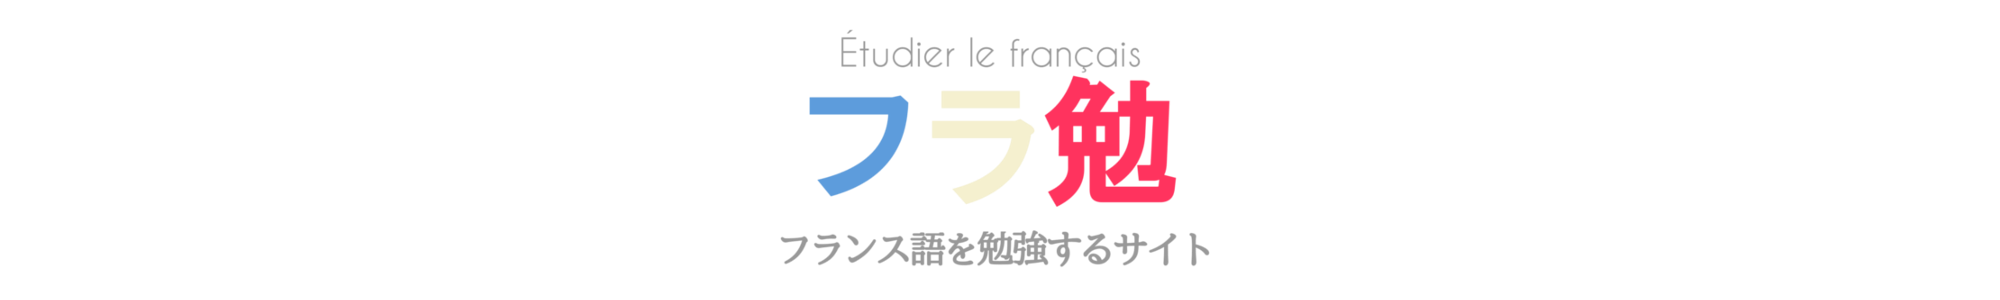 フランス語文法 不定詞 動詞の原形 の用法と作り方 使役構文と放任構文の違いを解説 フラ勉 フランス語を勉強するサイト